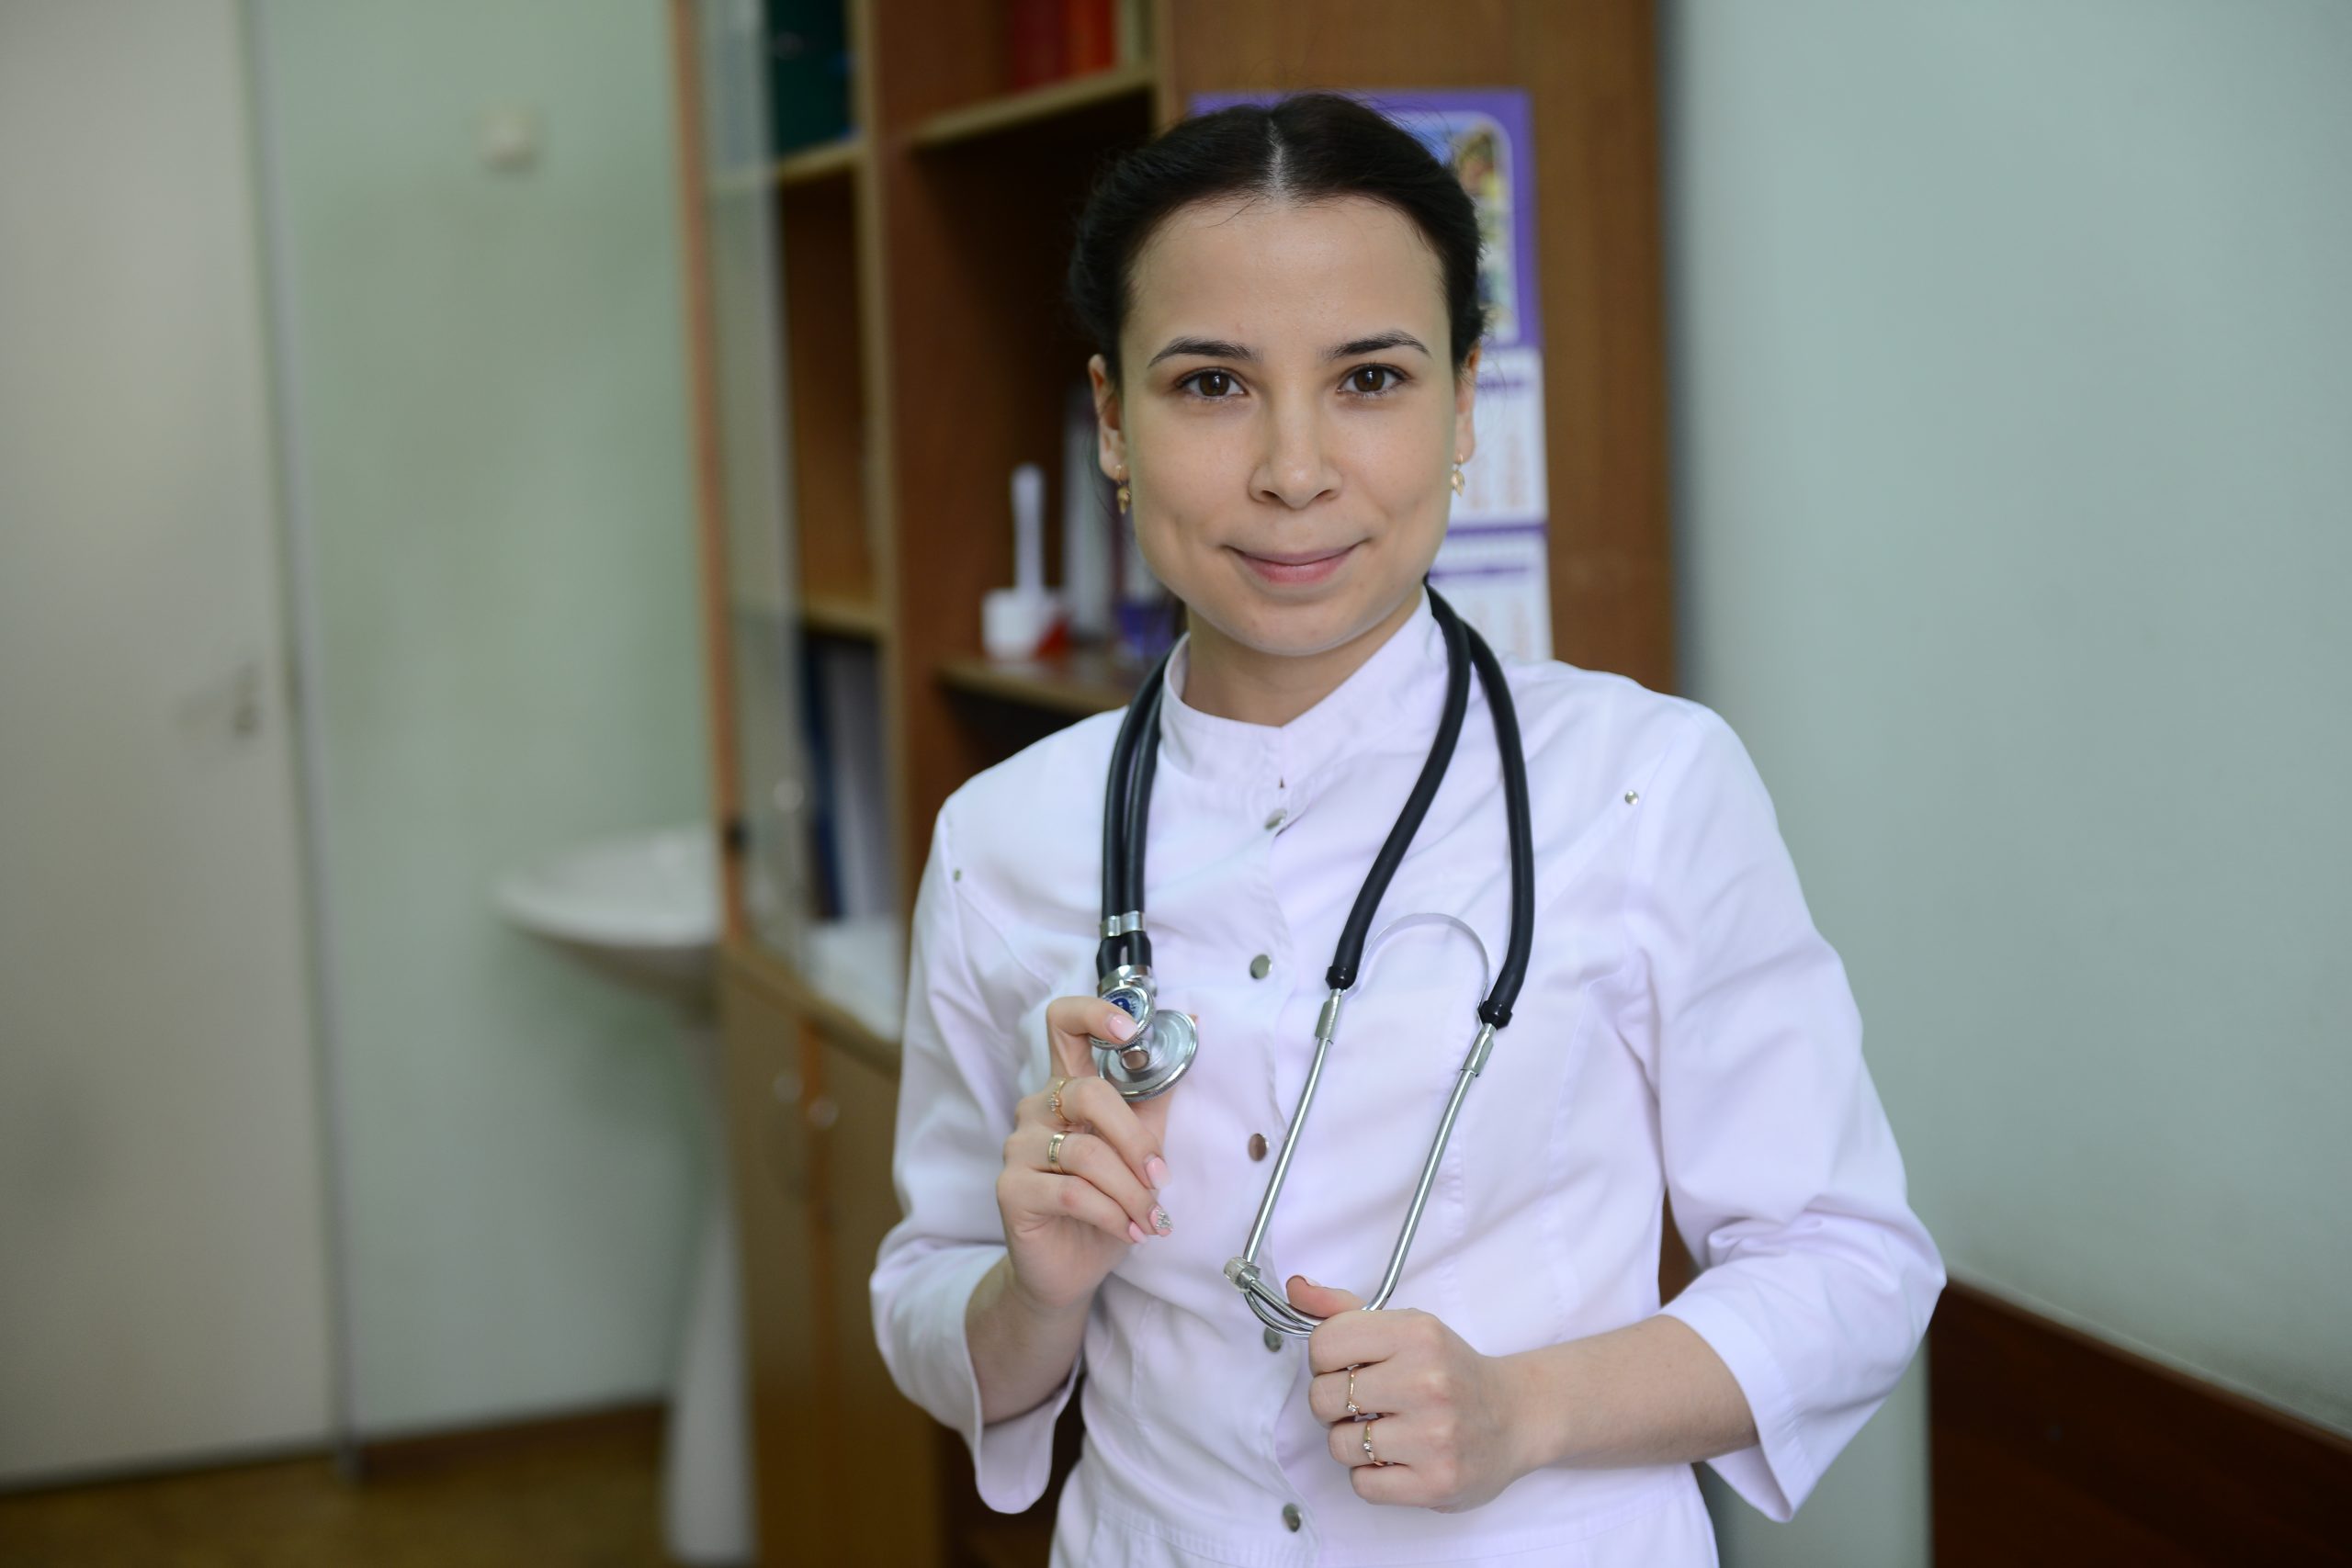 Работа врачом терапевтом в москве